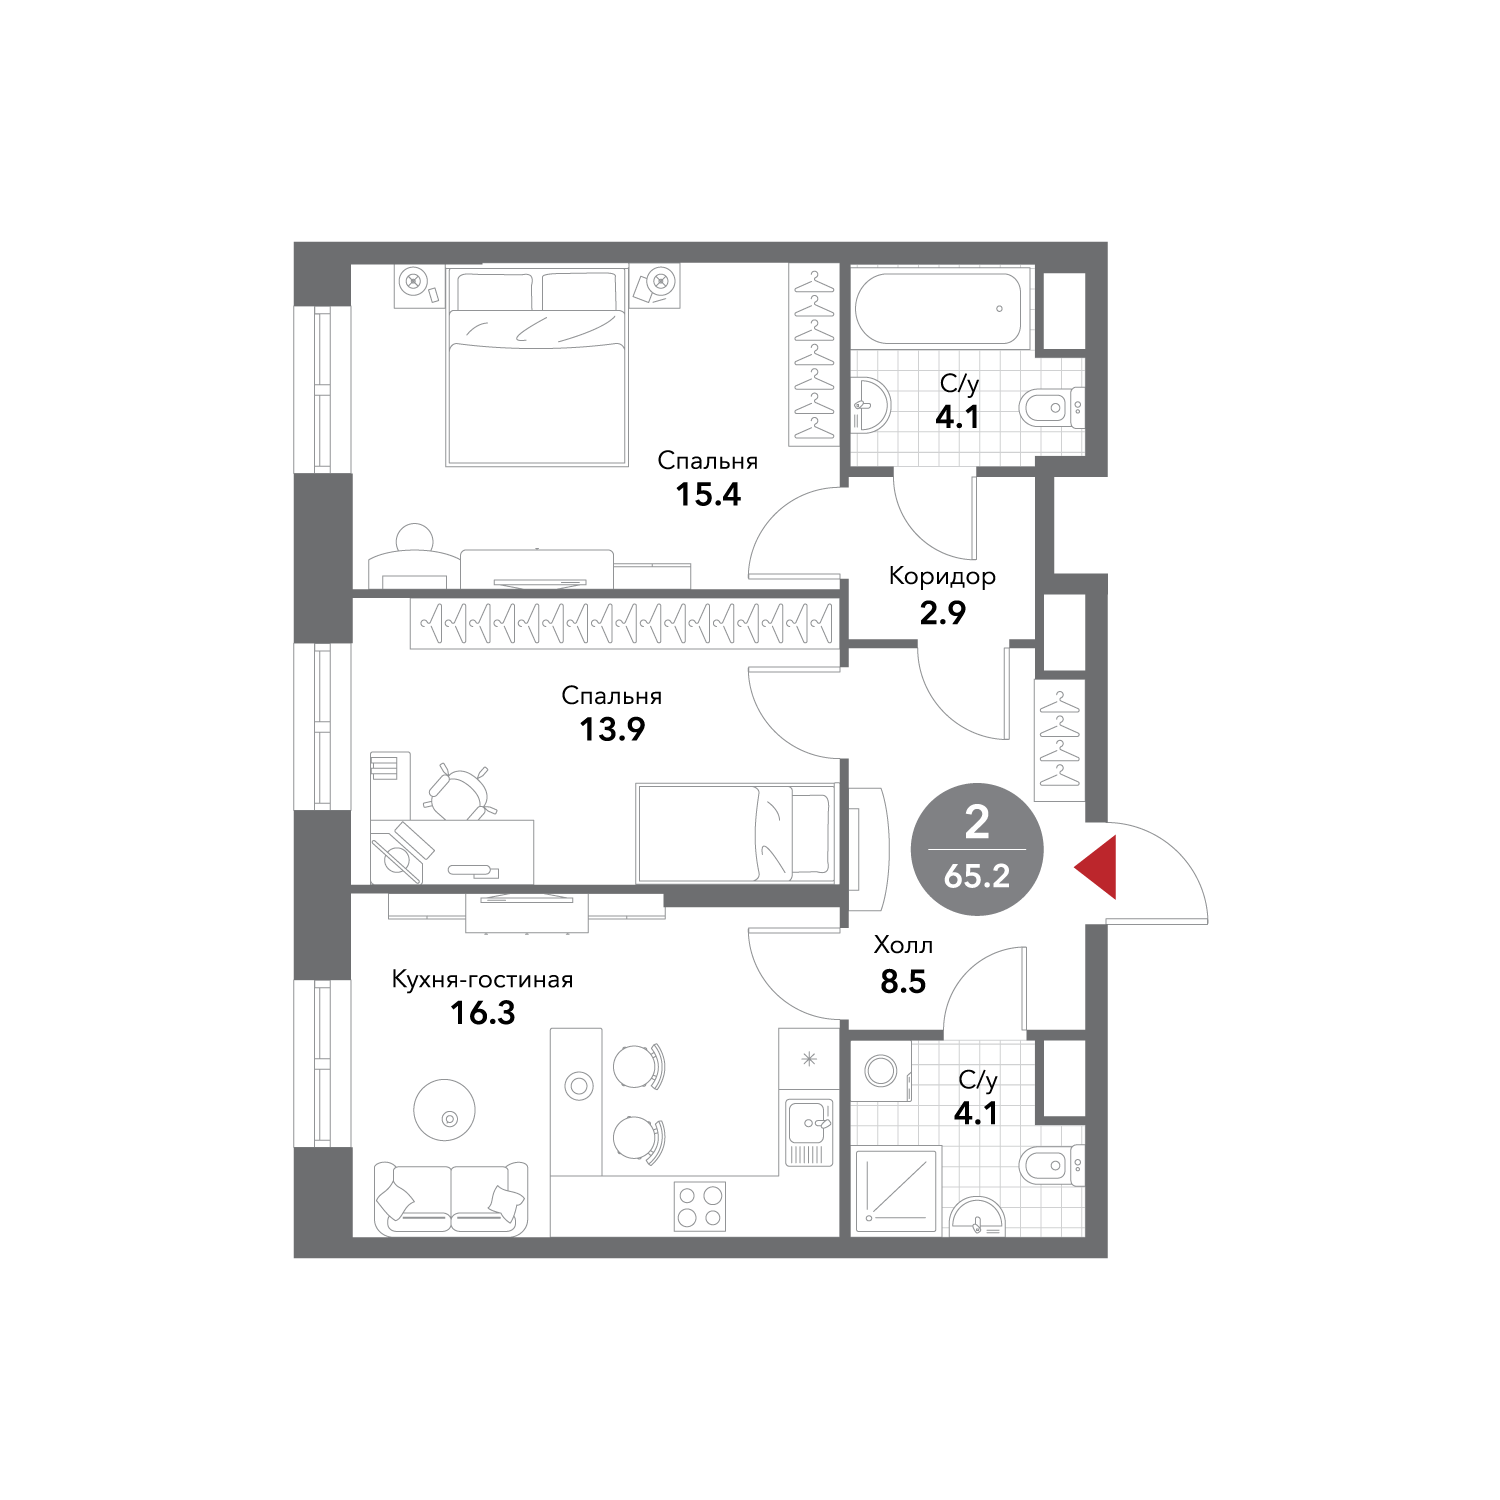 Планировка Квартира с 2 спальнями 65.3 м2 в ЖК Voxhall